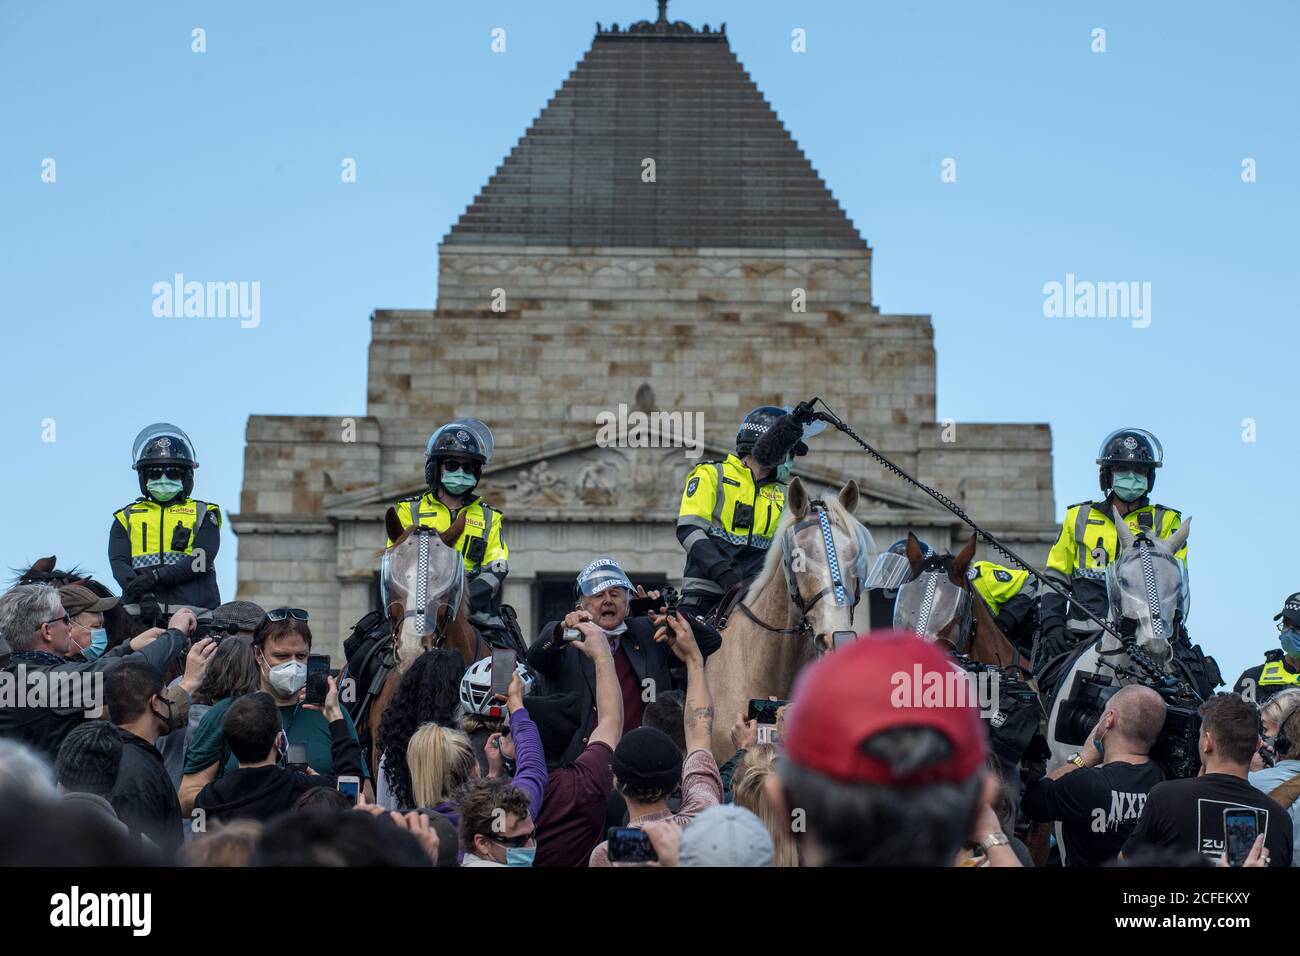 Melbourne, Australien 5 Sep 2020, Protestierenden jubeln und singen vor Polizeipferden und dem Schrein beim Freedom Day Anti-Maske und Anti-Lockdown Protest am Schrein der Erinnerung in Melbourne Australien. Kredit: Michael Currie/Alamy Live Nachrichten Stockfoto